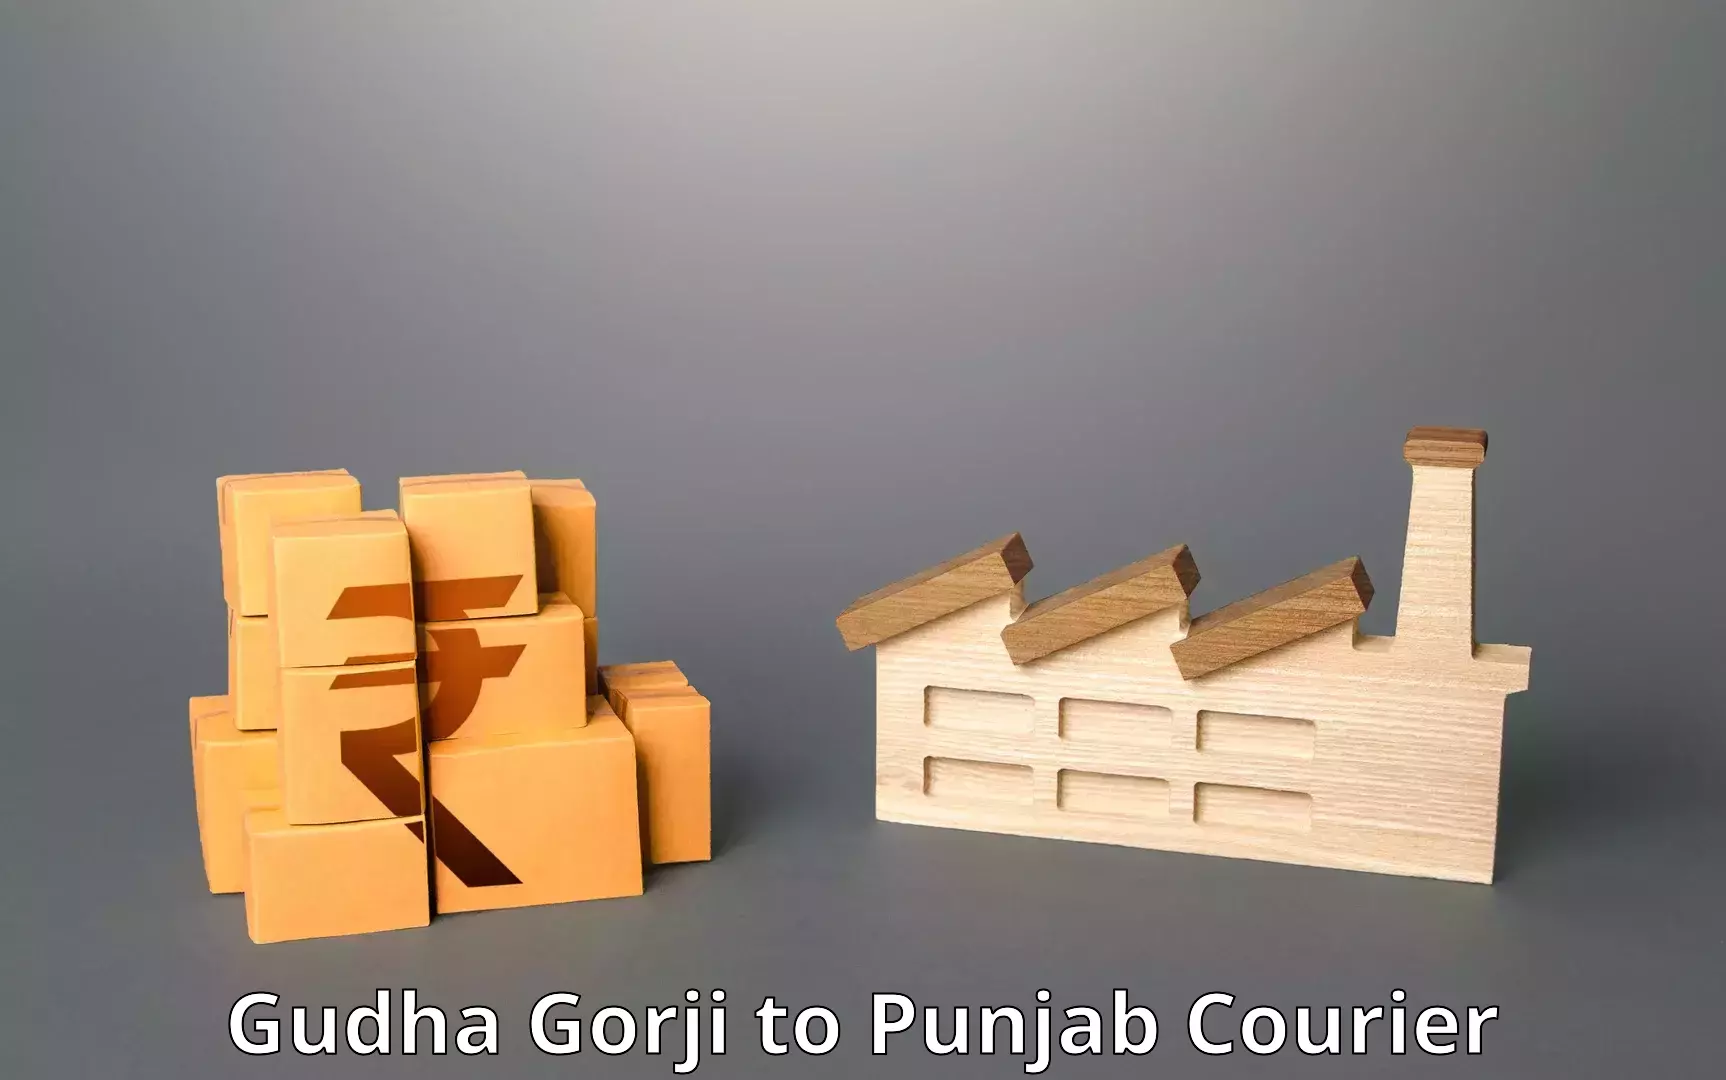 Retail shipping solutions in Gudha Gorji to Punjab